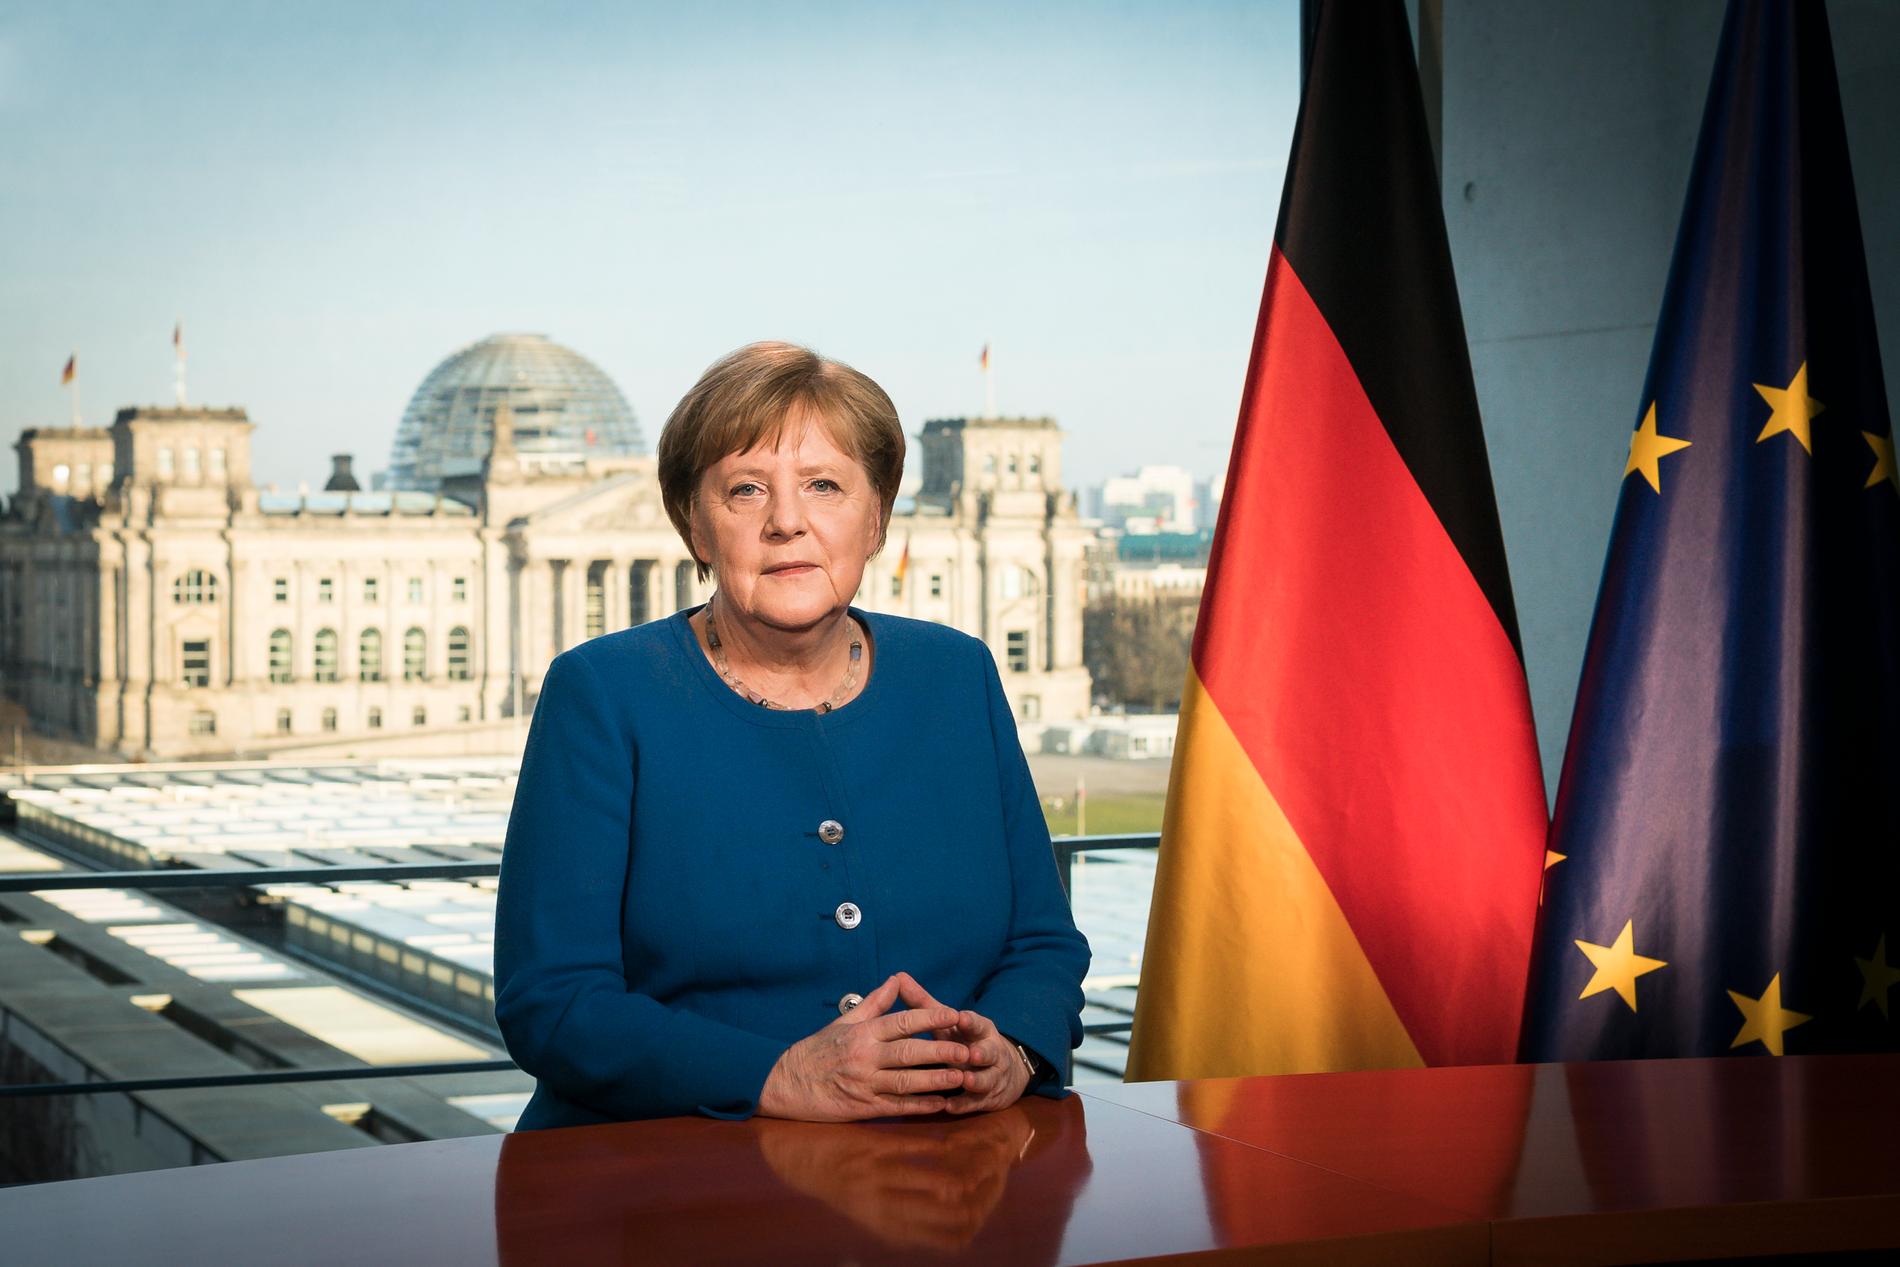 Tysklands förbundskansler Angela Merkel och hennes regering förbereder ett stödpaket på motsvarande 450 miljarder kronor till egenföretagare och småföretagare. Arkivbild.